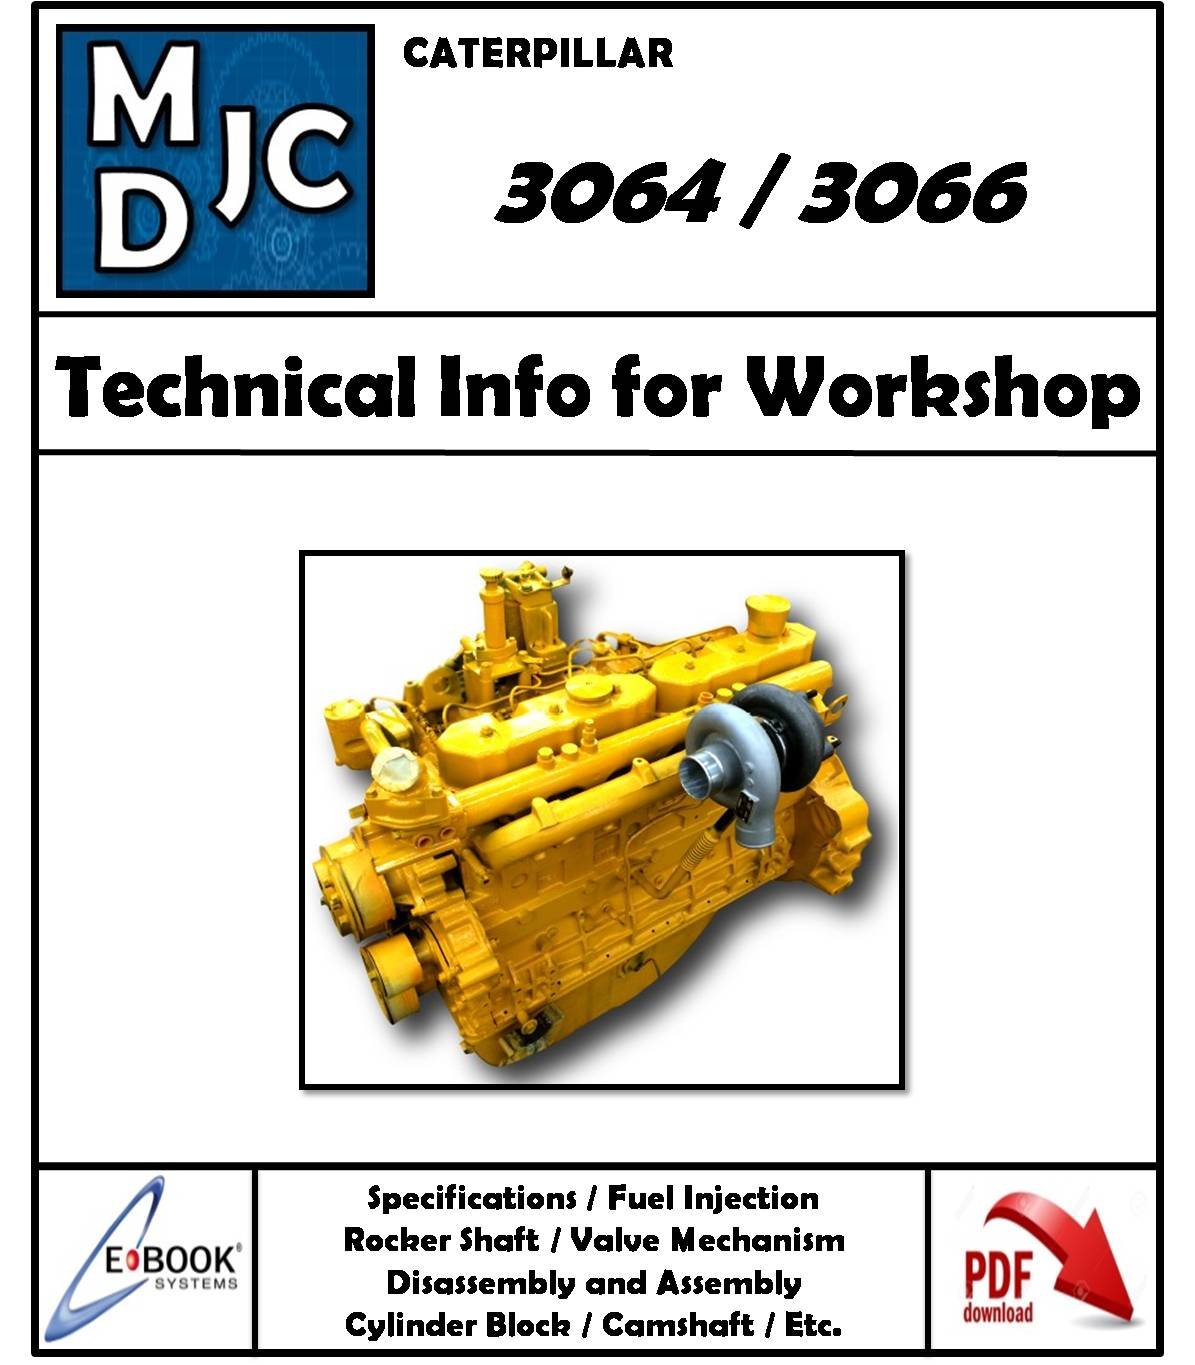 Manual De Información Técnica Para Taller Motor Caterpillar 3064 - 3066 |  MDJC - MANUALES DE TALLER